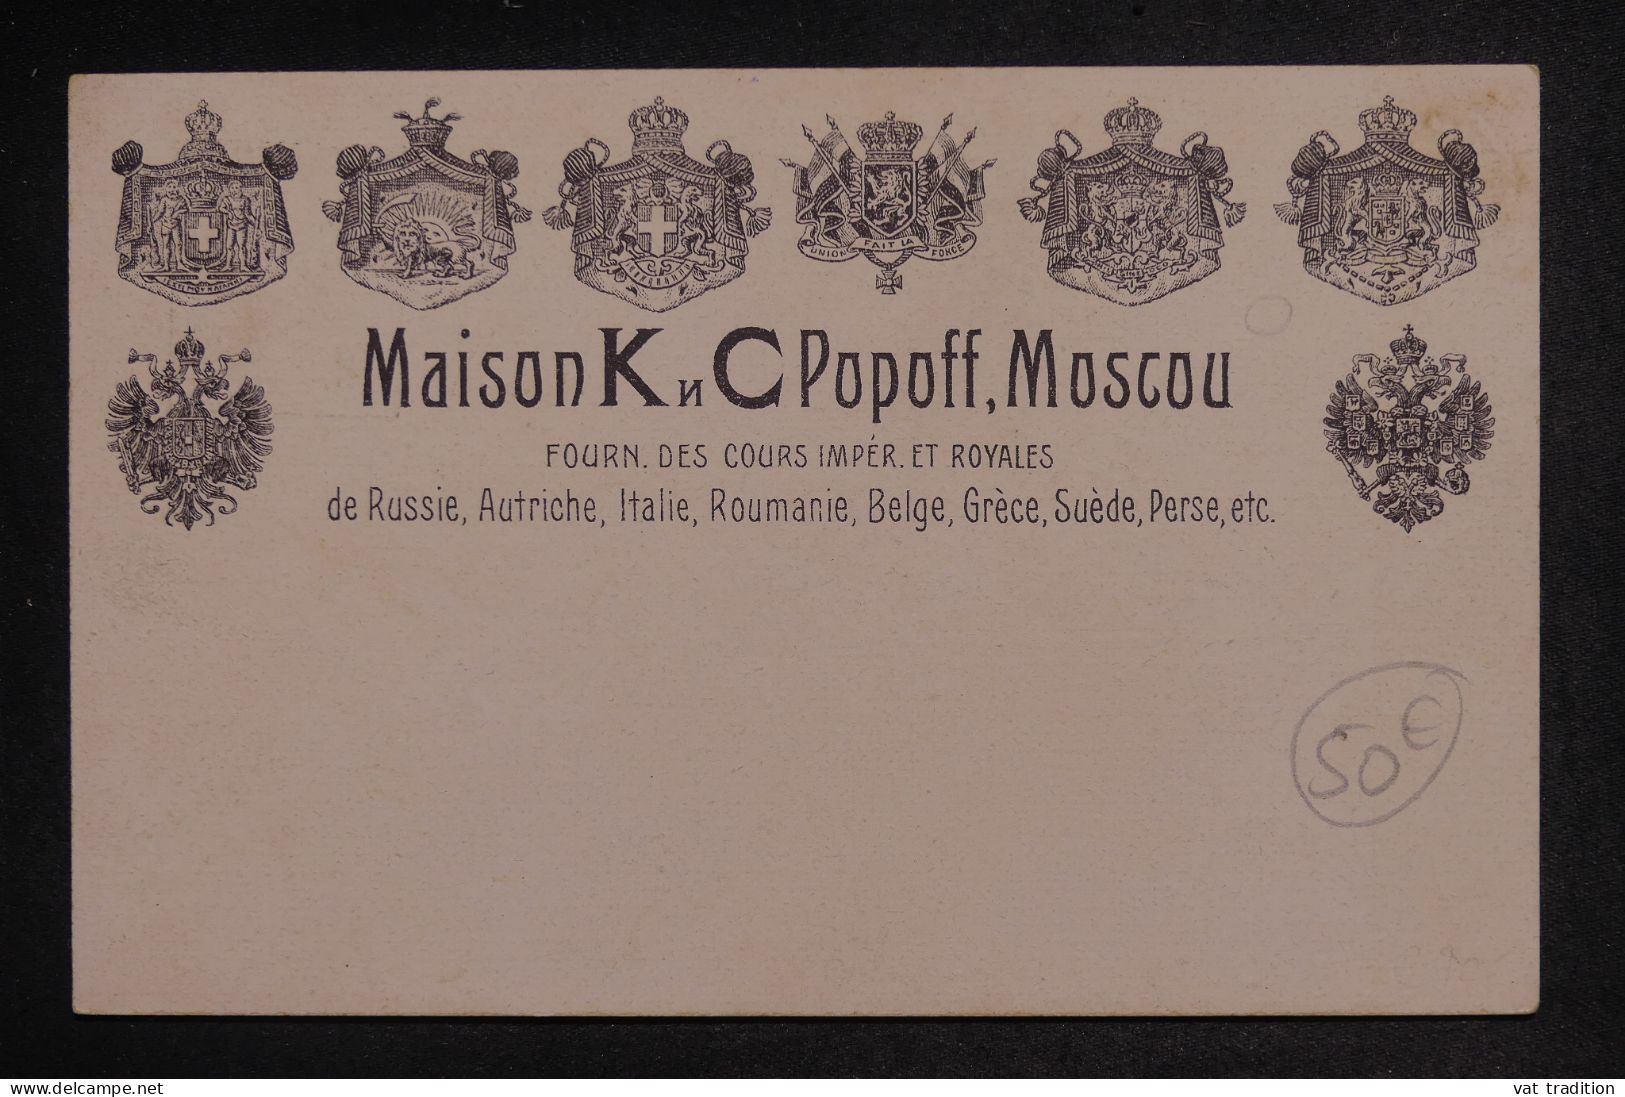 AUTRICHE - Entier Postal Illustré (Thés Russes), Non Circulé Avec Repiquage Déplacé - Pas Courant - L 153322 - Briefkaarten